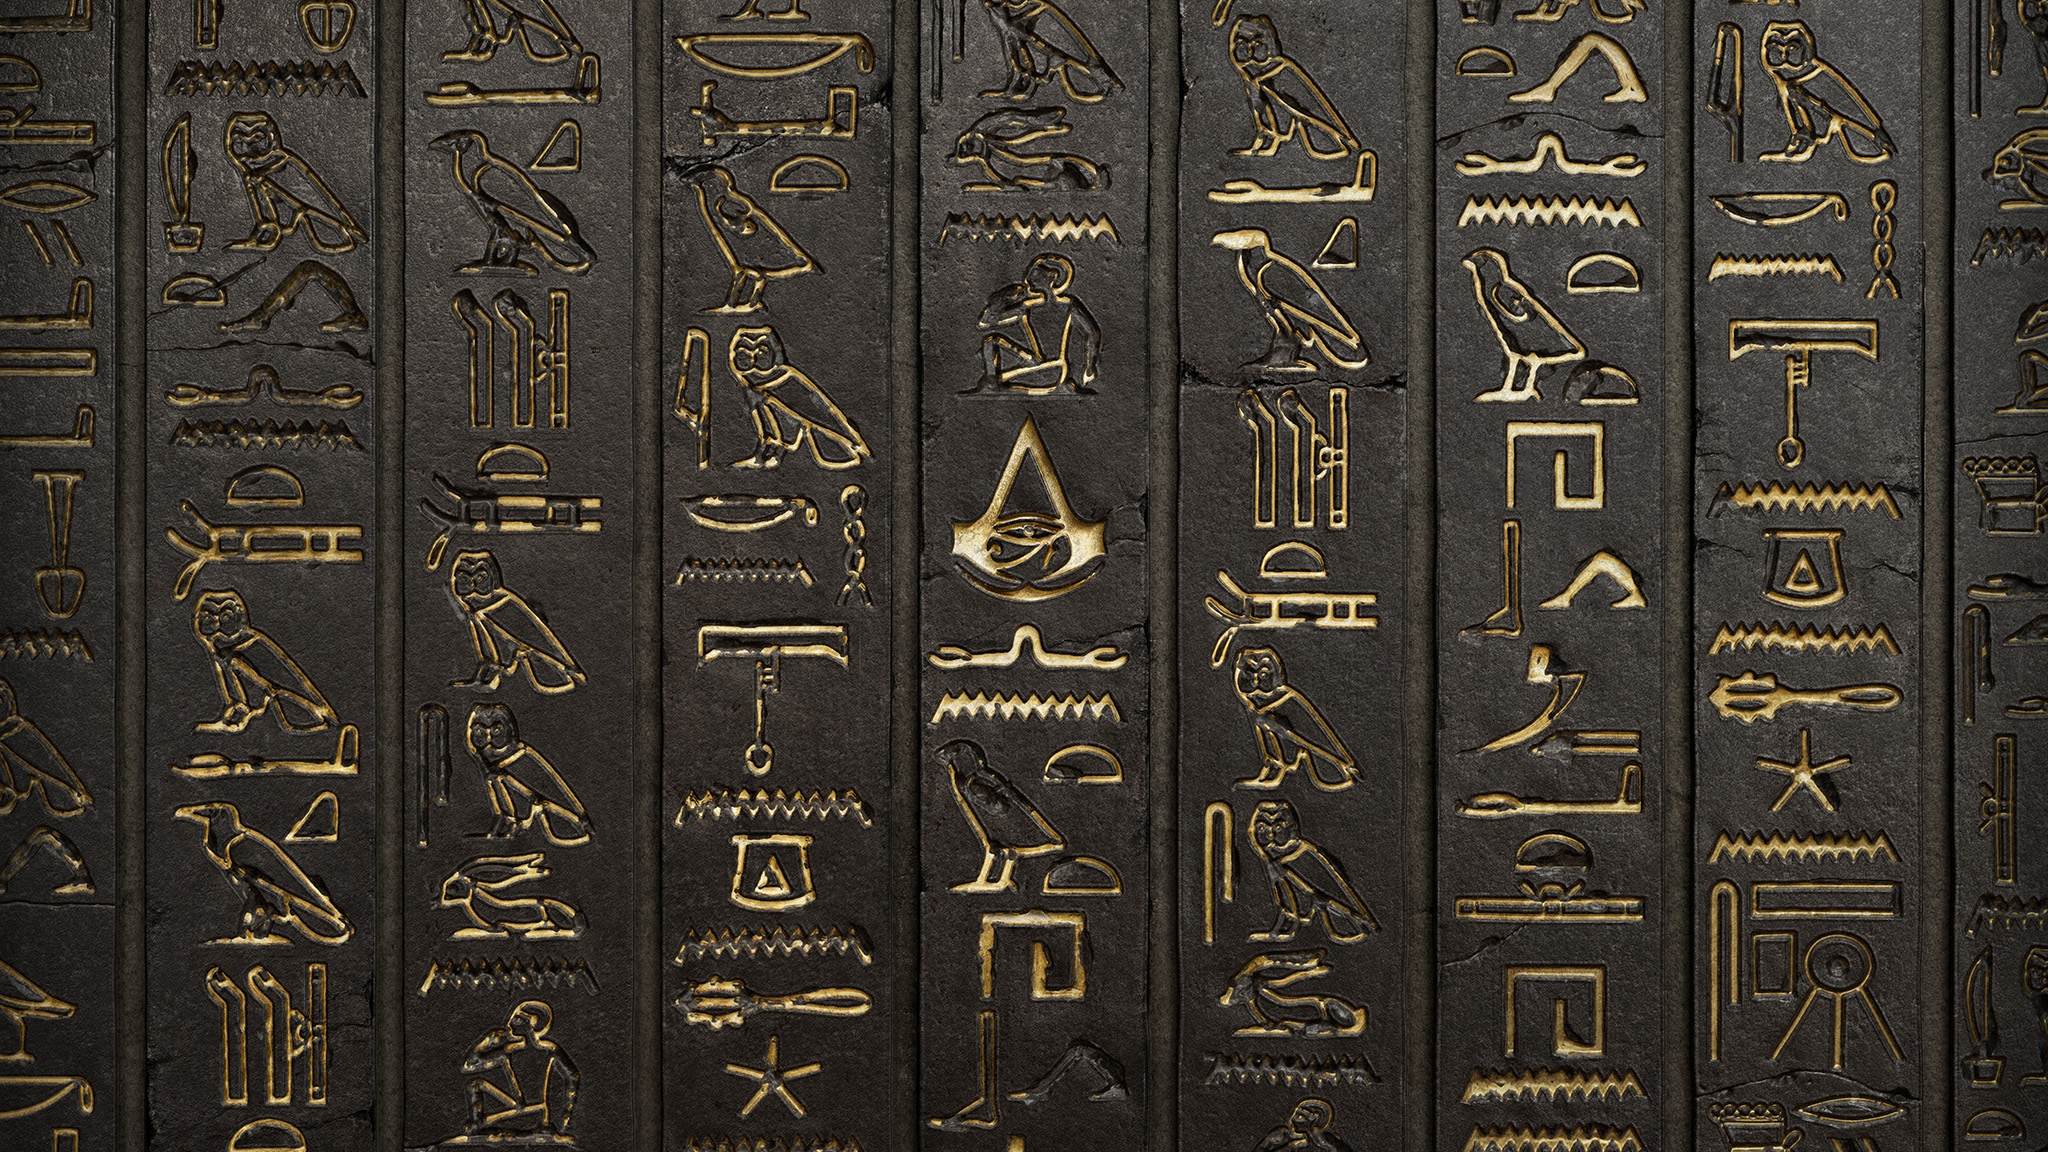 Assassins Creed, Hieroglyphs, Wall, Video games, Digital art, Assassins